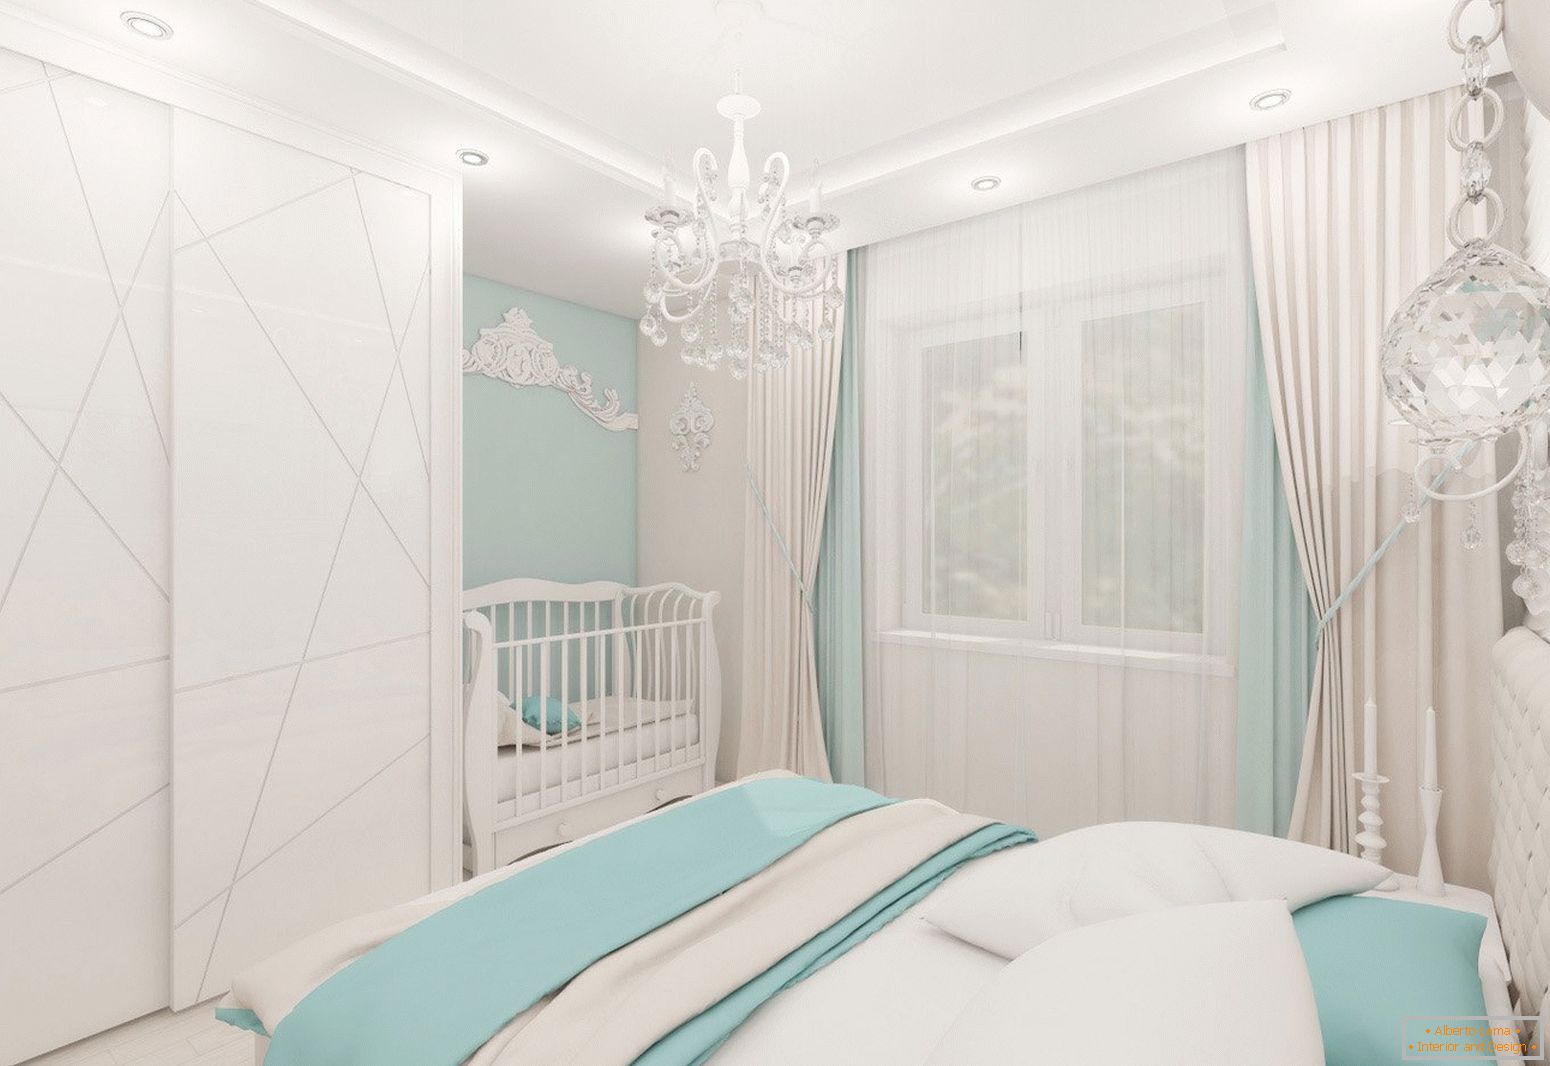 Diseño de dormitorio en colores claros